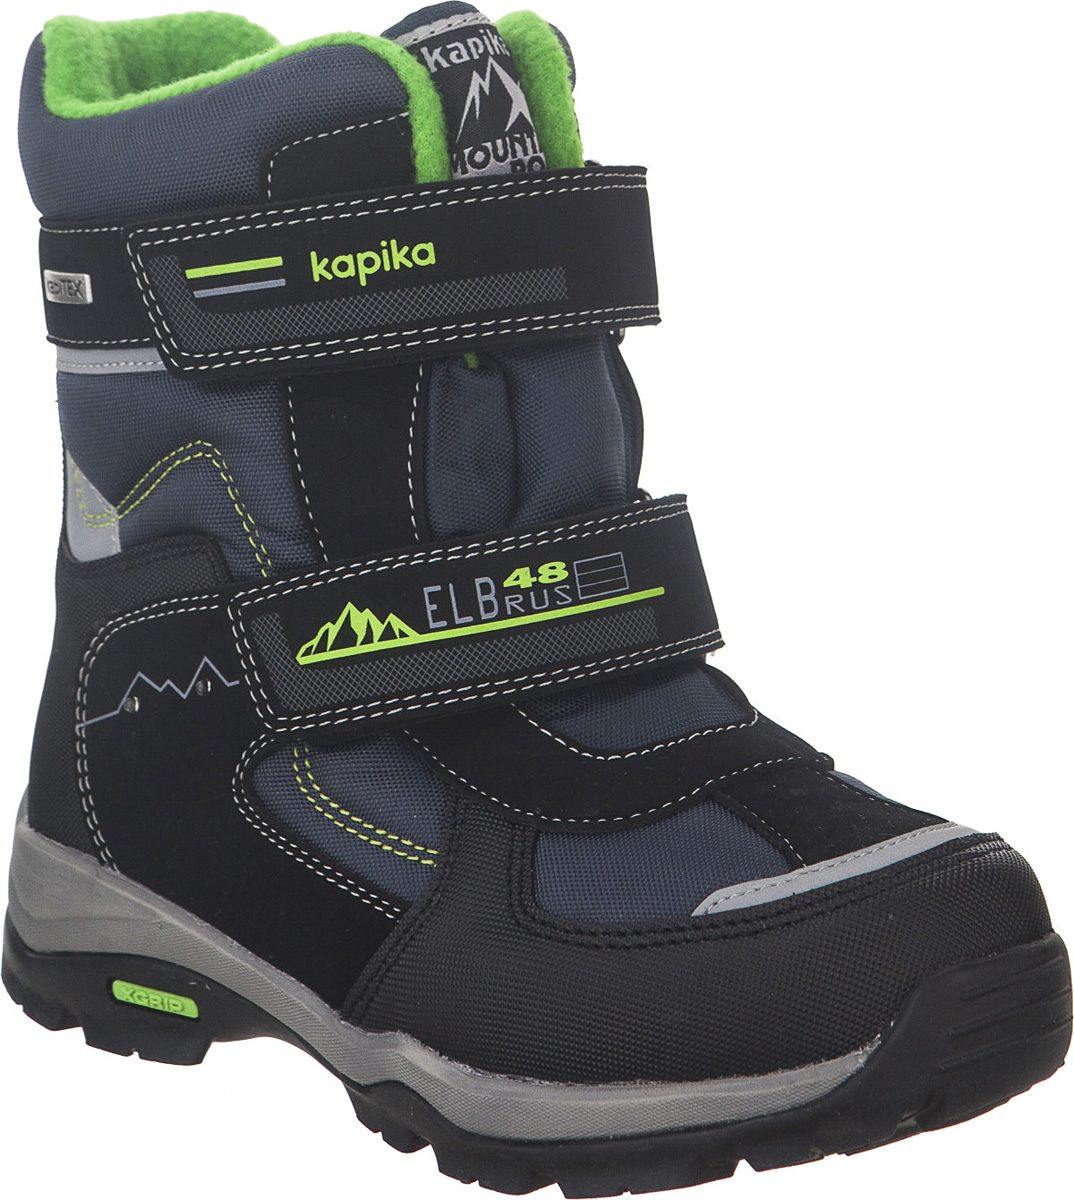 Ботинки для мальчика Kapika KapiTEX, цвет: черный, синий, салатовый. 43199-2. Размер 32